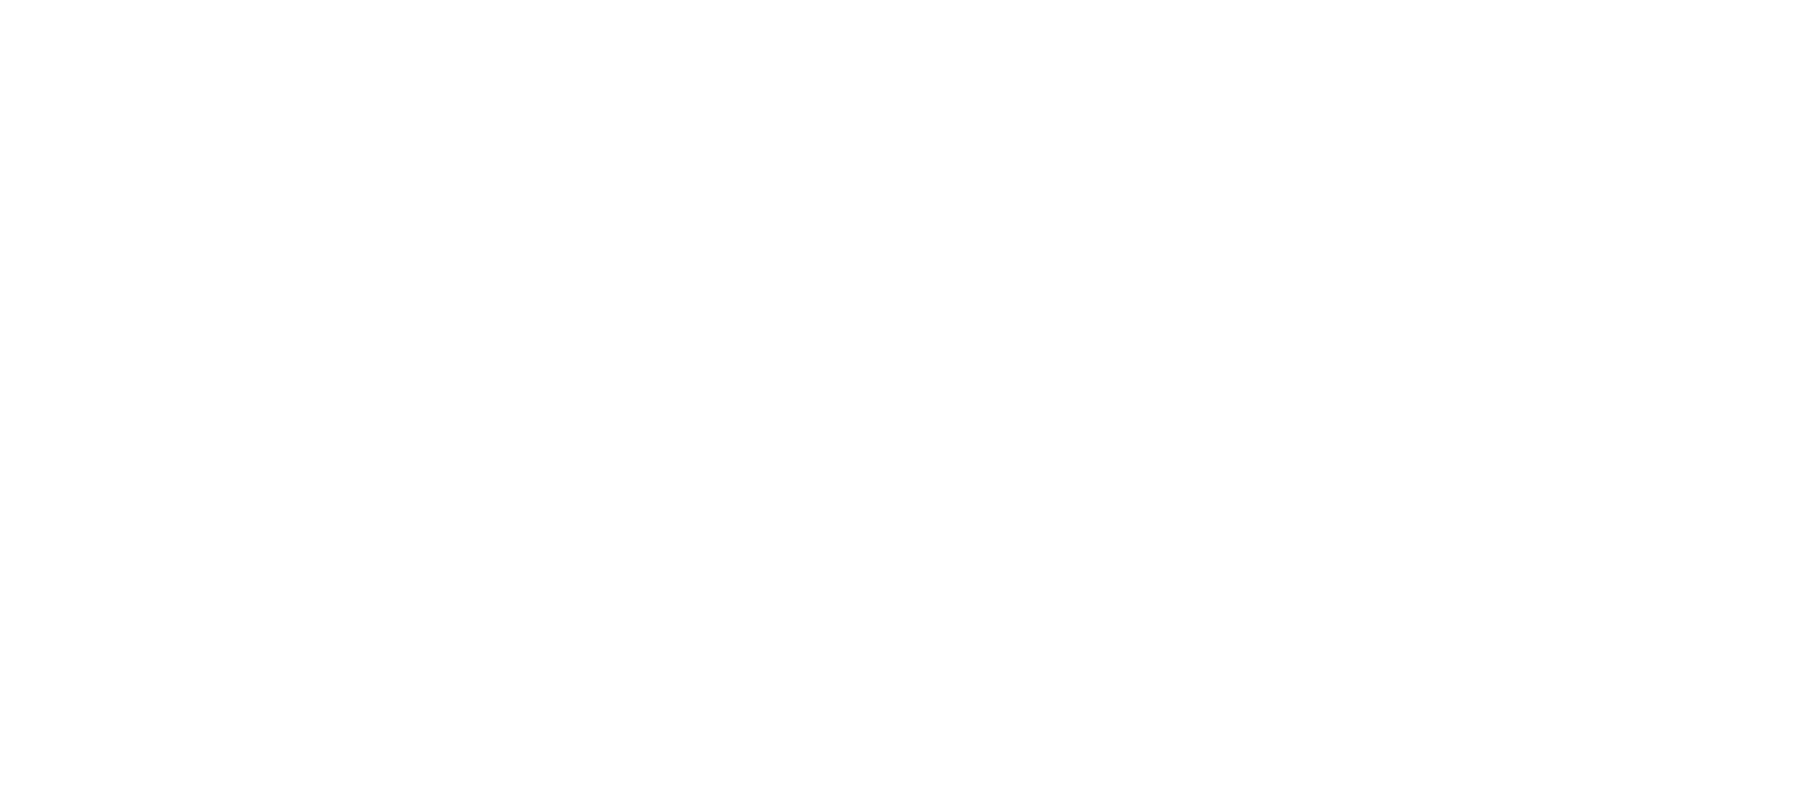 ABBRA 2024 Annual Conference
